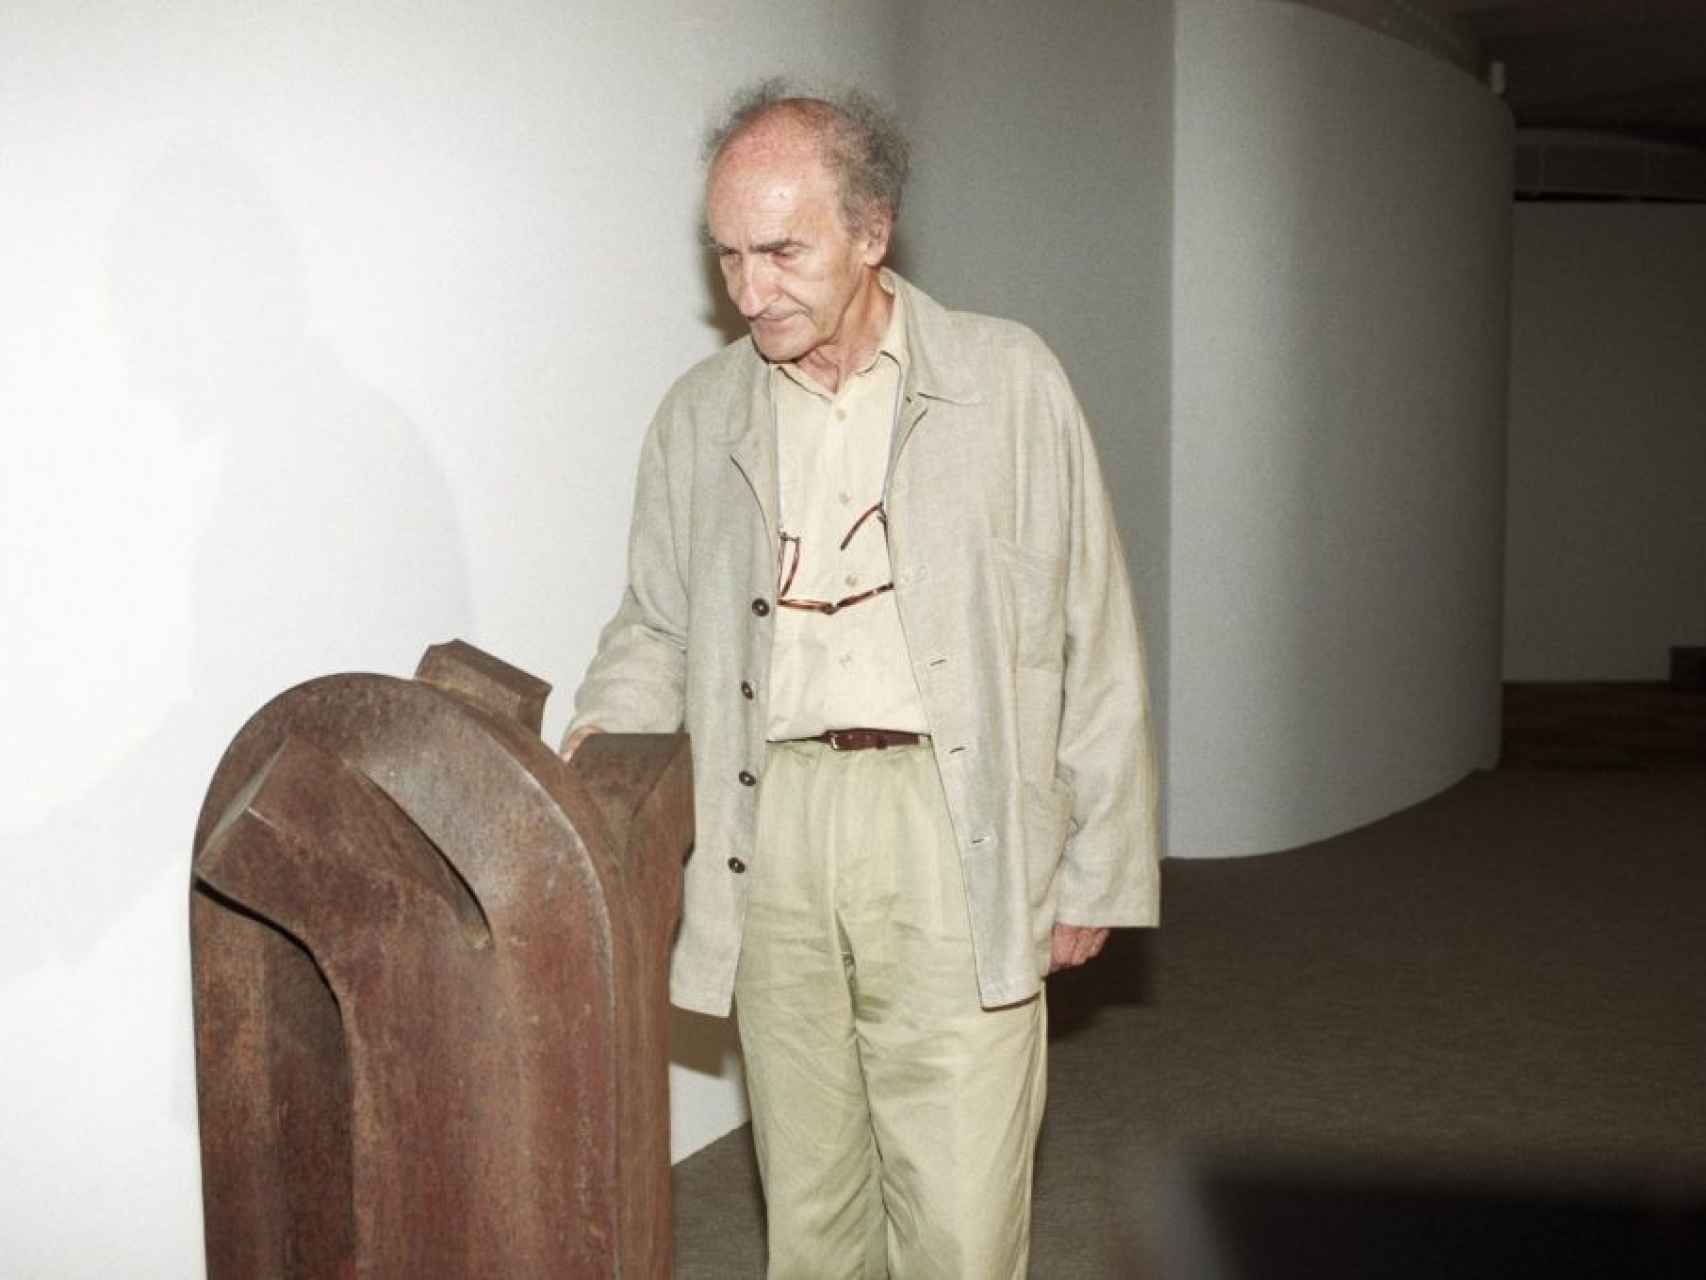 El escultor Eduardo Chillida, durante una exposición en Barcelona.